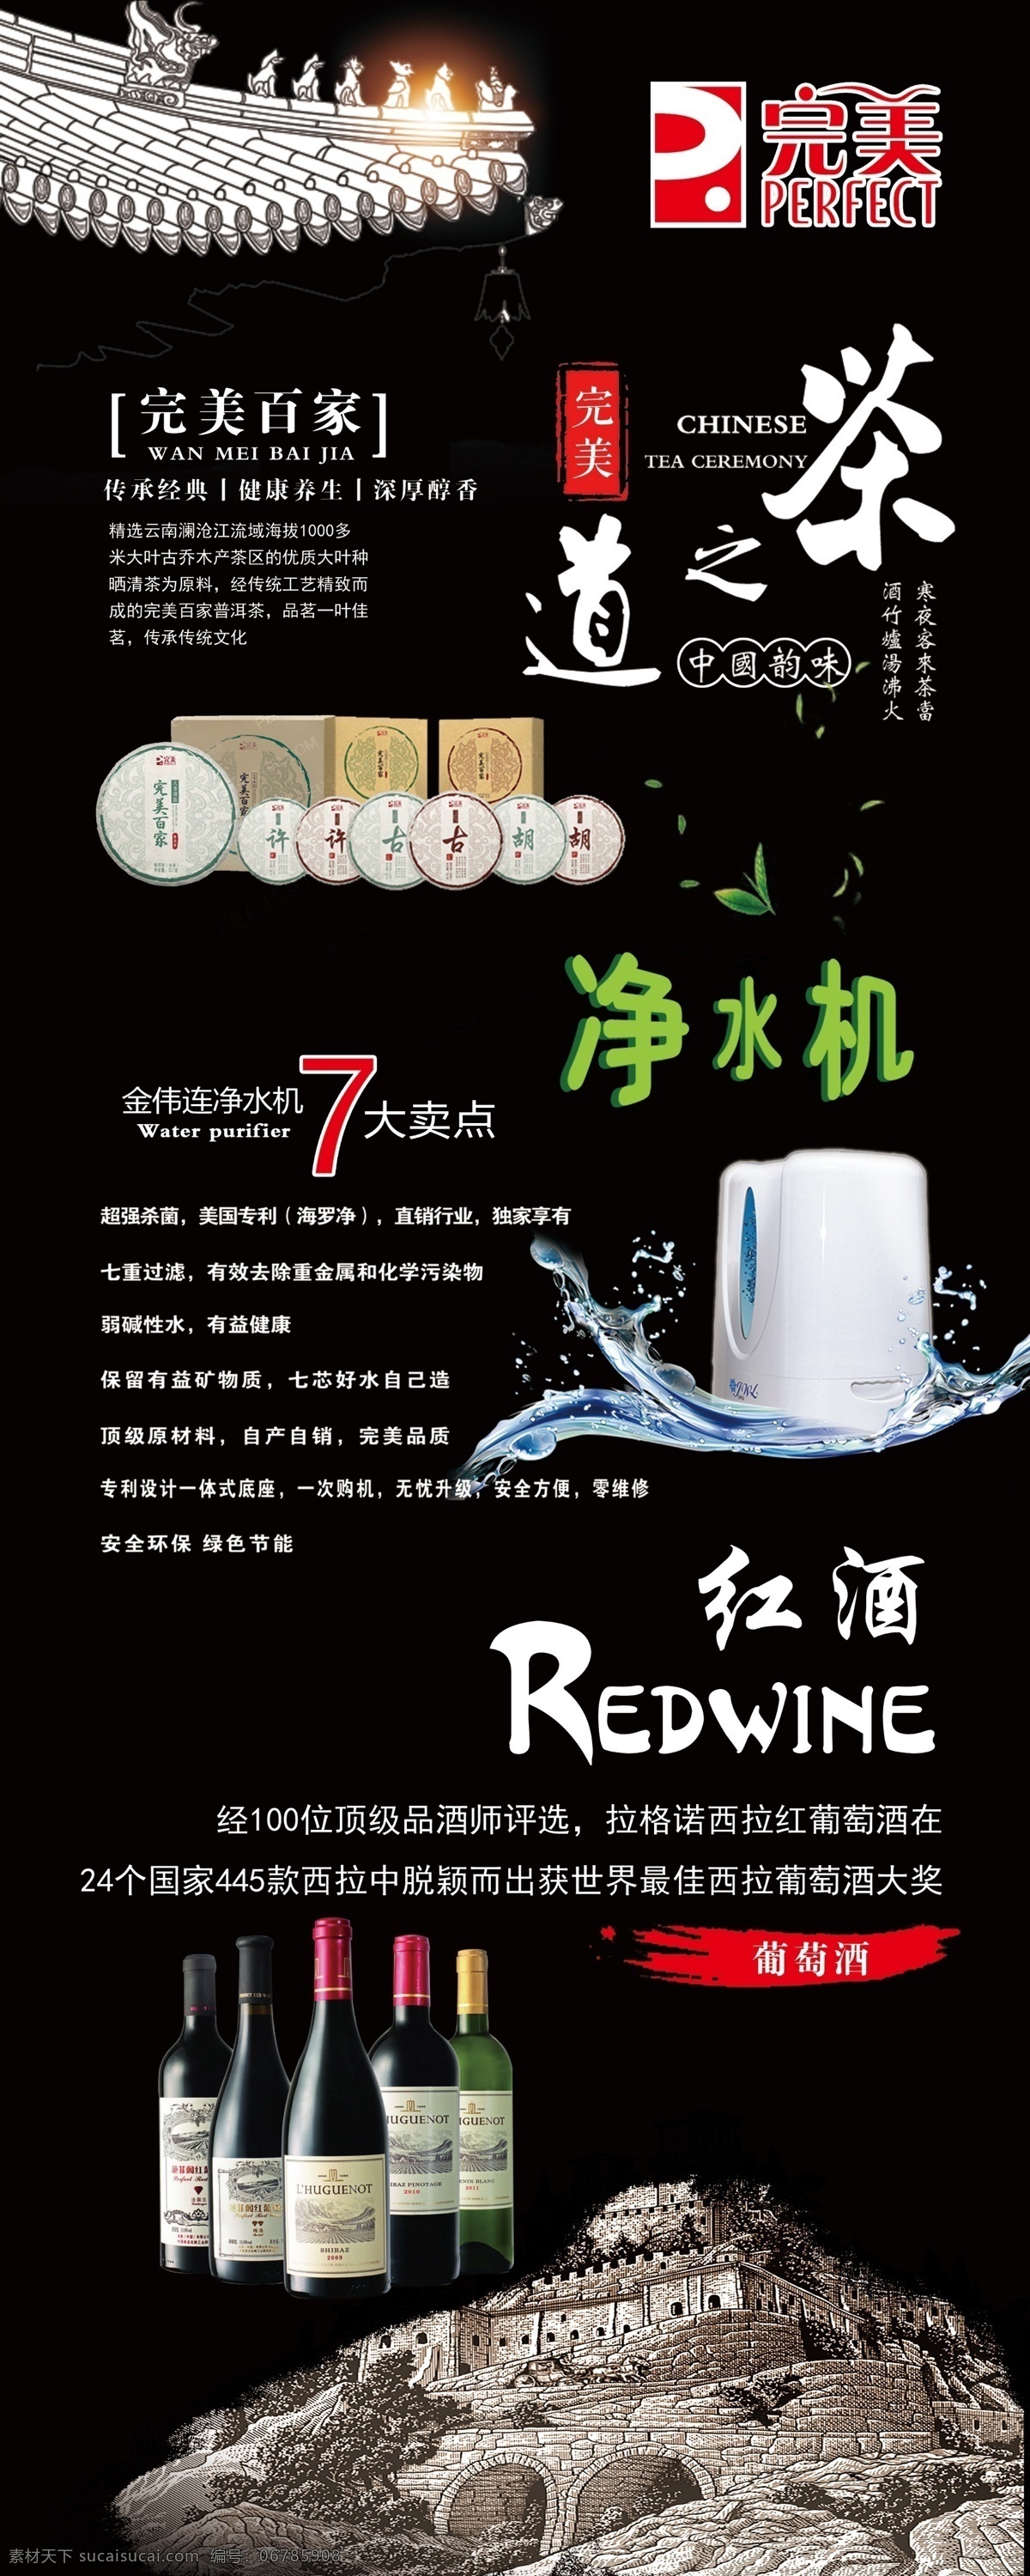 净水机 茶之道 红酒 完美产品 黑色背景 葡萄酒瓶 红酒广告 净水机广告 茶道 展板 展板模板